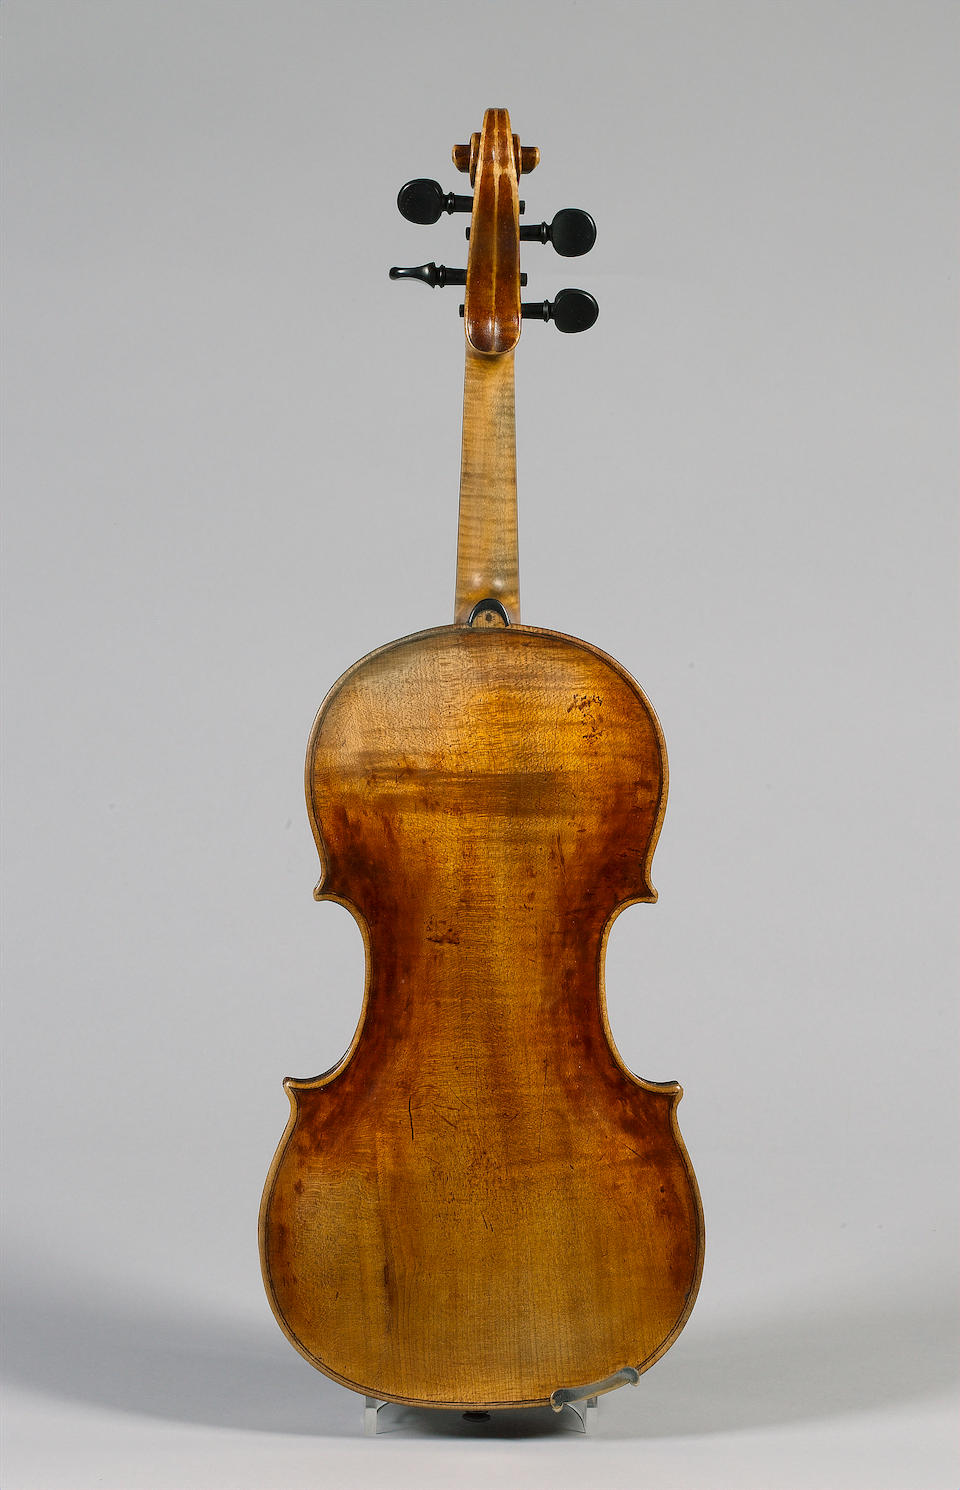 A fine and interesting Violin